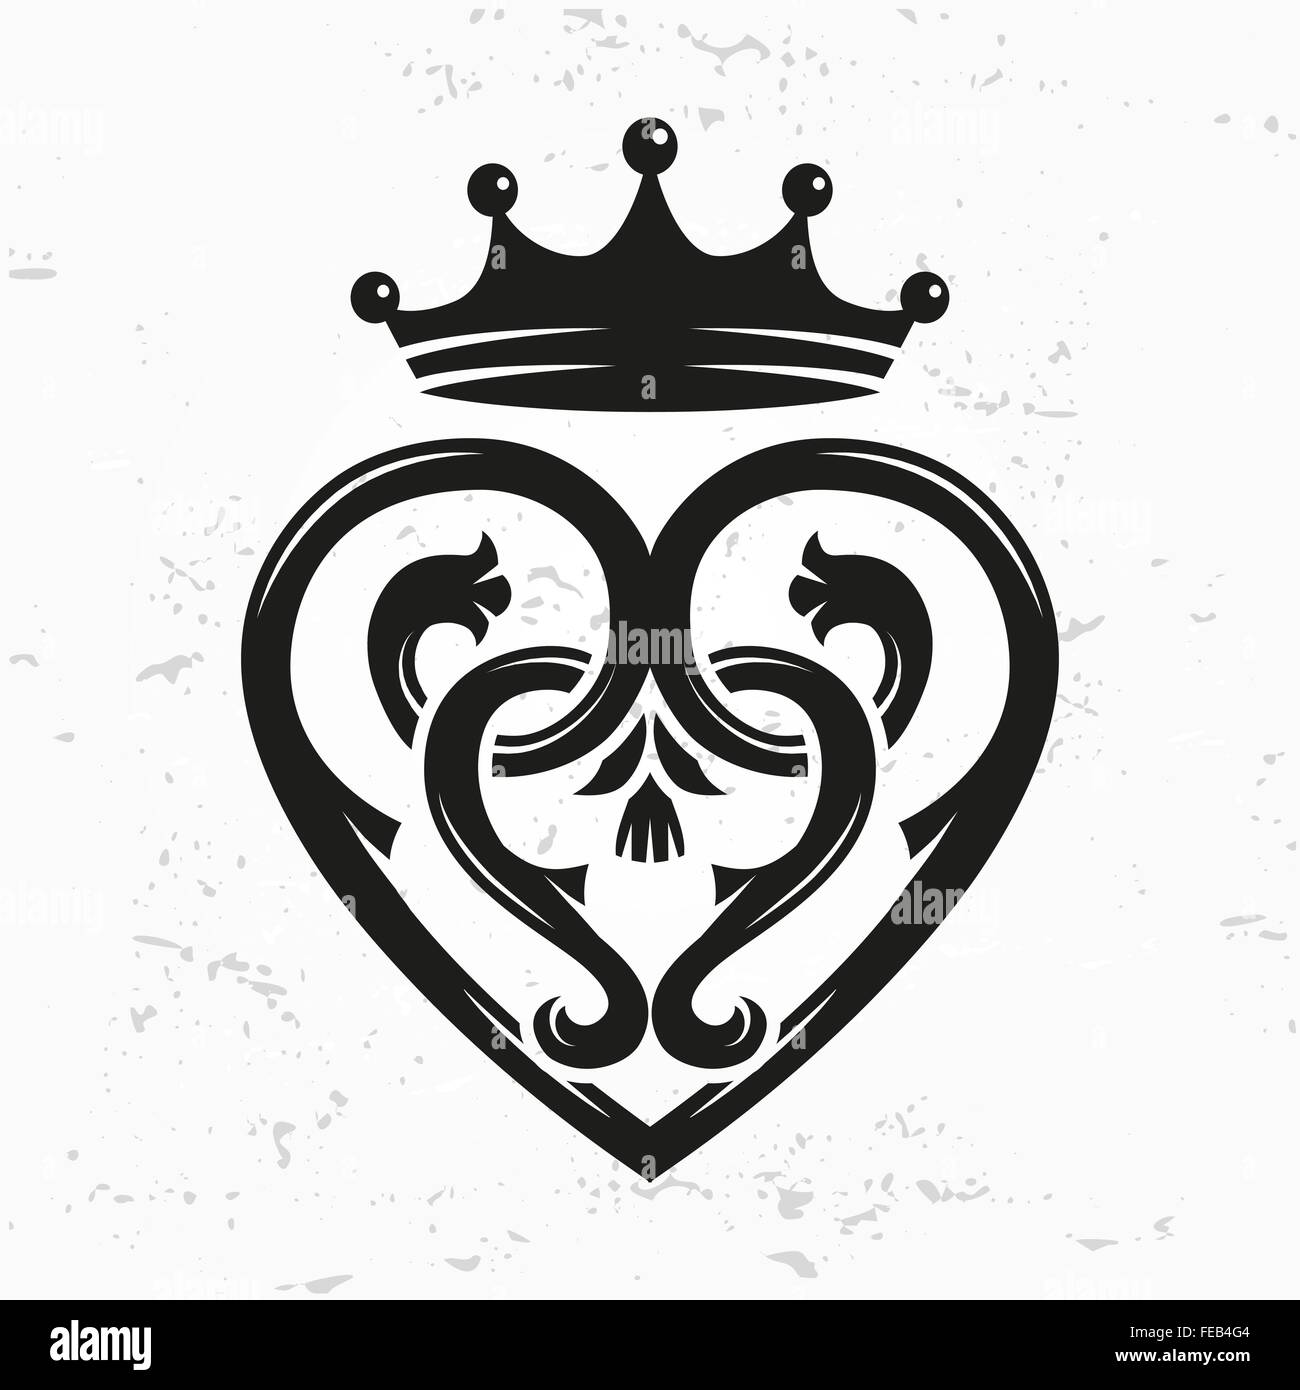 Spilla Luckenbooth vettore elemento di design. Vintage Scottish forma di cuore con la corona logo symbol concetto. Il giorno di San Valentino o illustrazione di nozze su grunge background. Illustrazione Vettoriale